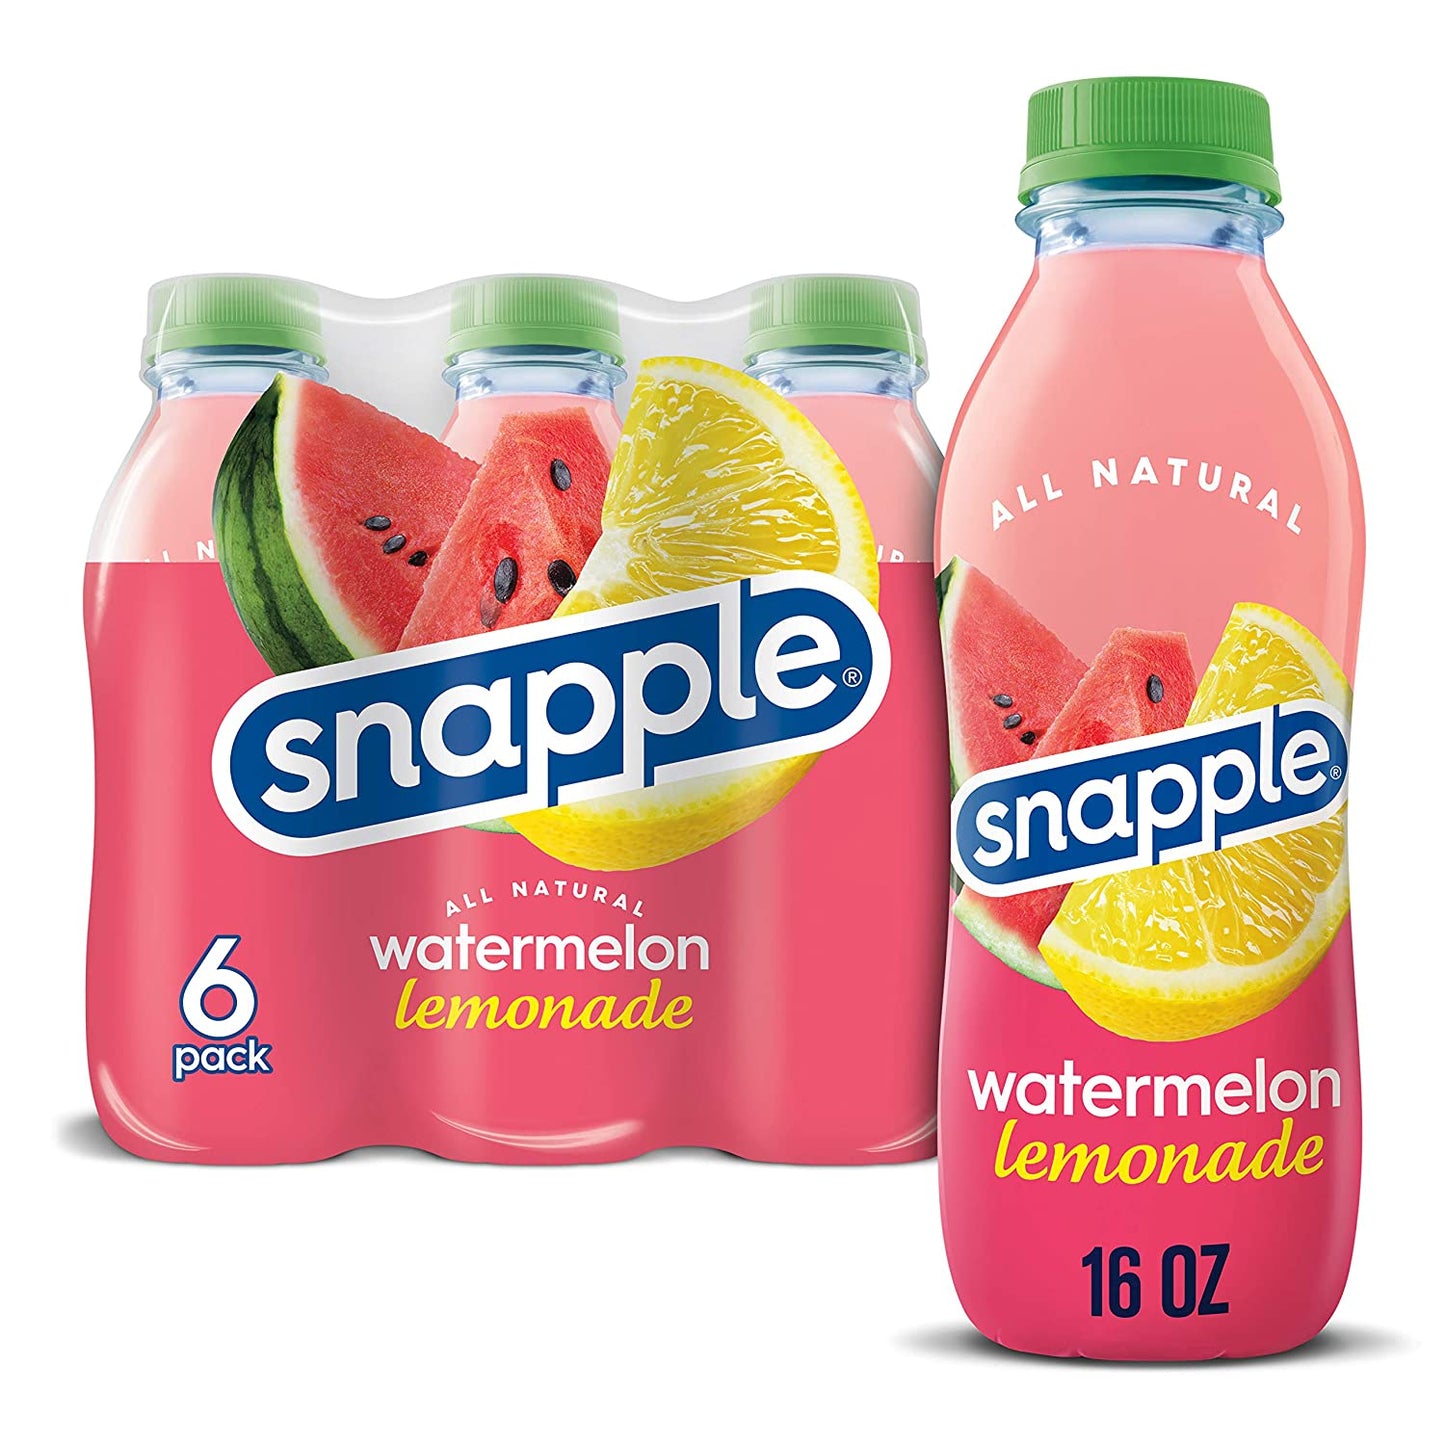 Snapple Watermelon Lemonade - drinkdrop.net